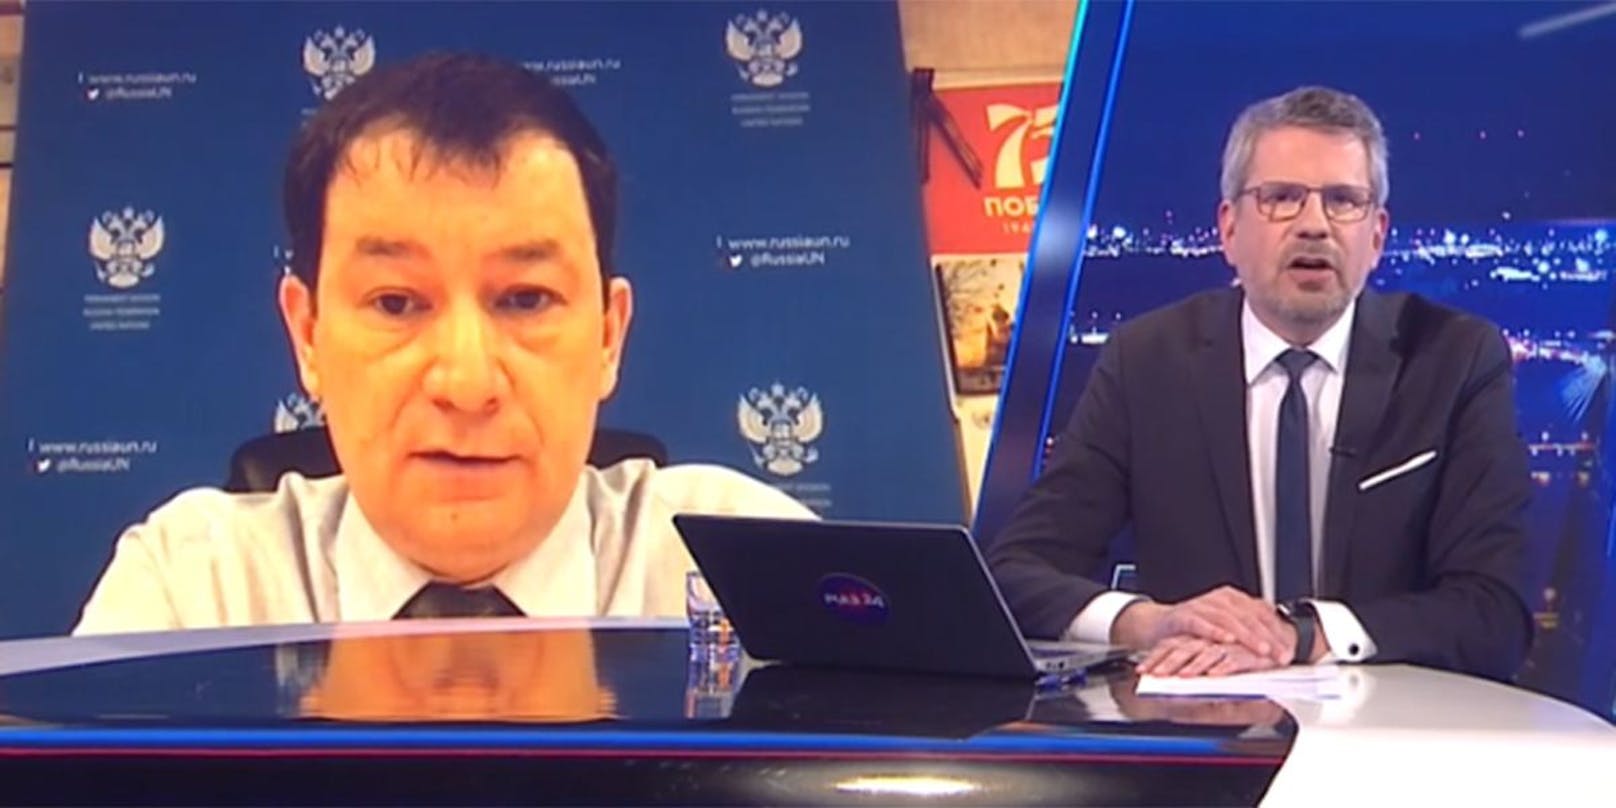 Russischer Spitzendiplomat Polyanskiy zu Puls-4-Moderator: "Ich weiß nicht, was Sie rauchen, wenn Sie die News machen."